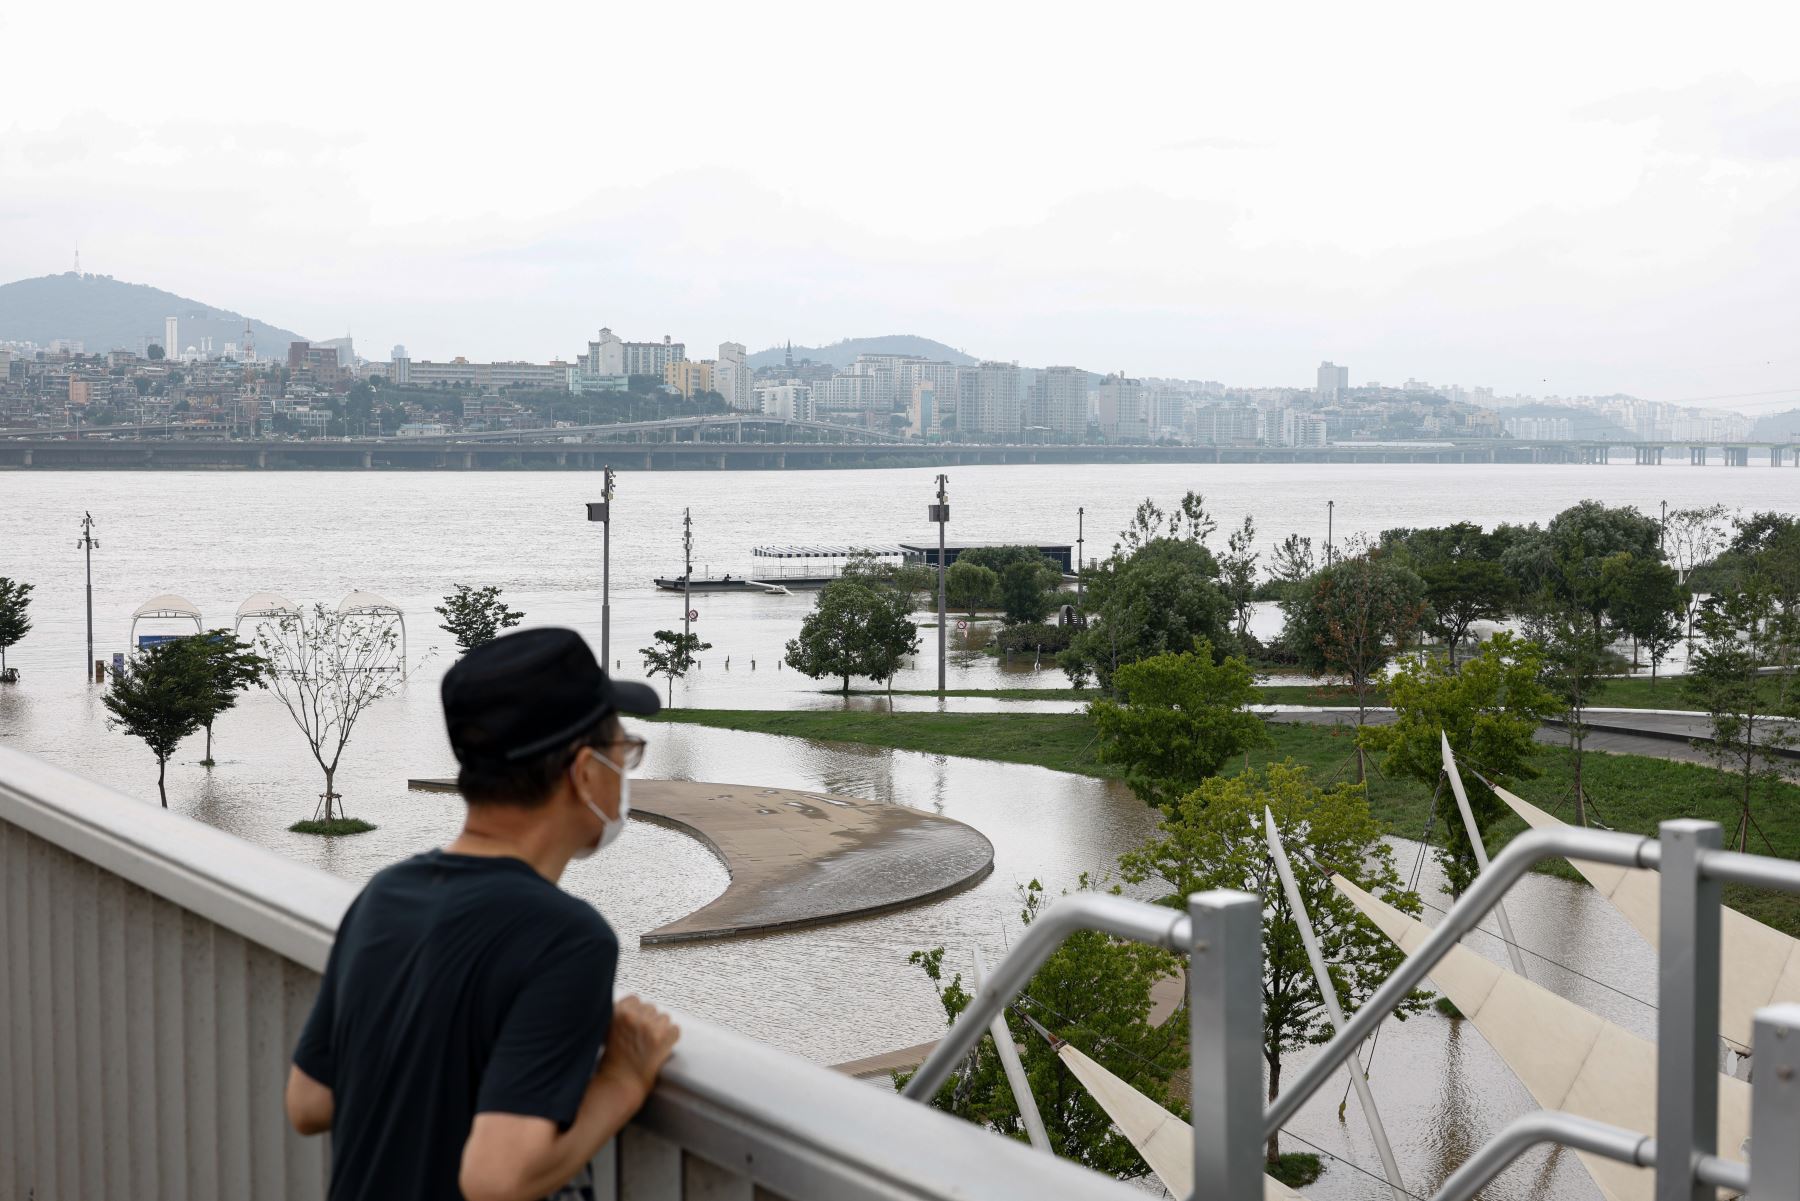 Un hombre mira desde el puente Jamsu sobre el río Han que desborda sus riberas en Seúl, Corea del Sur. Según los informes, al menos 13 personas han muerto y otras 13 desaparecieron después de que fuertes lluvias desencadenaran inundaciones y deslizamientos de lodo en el país.

Foto:EFE